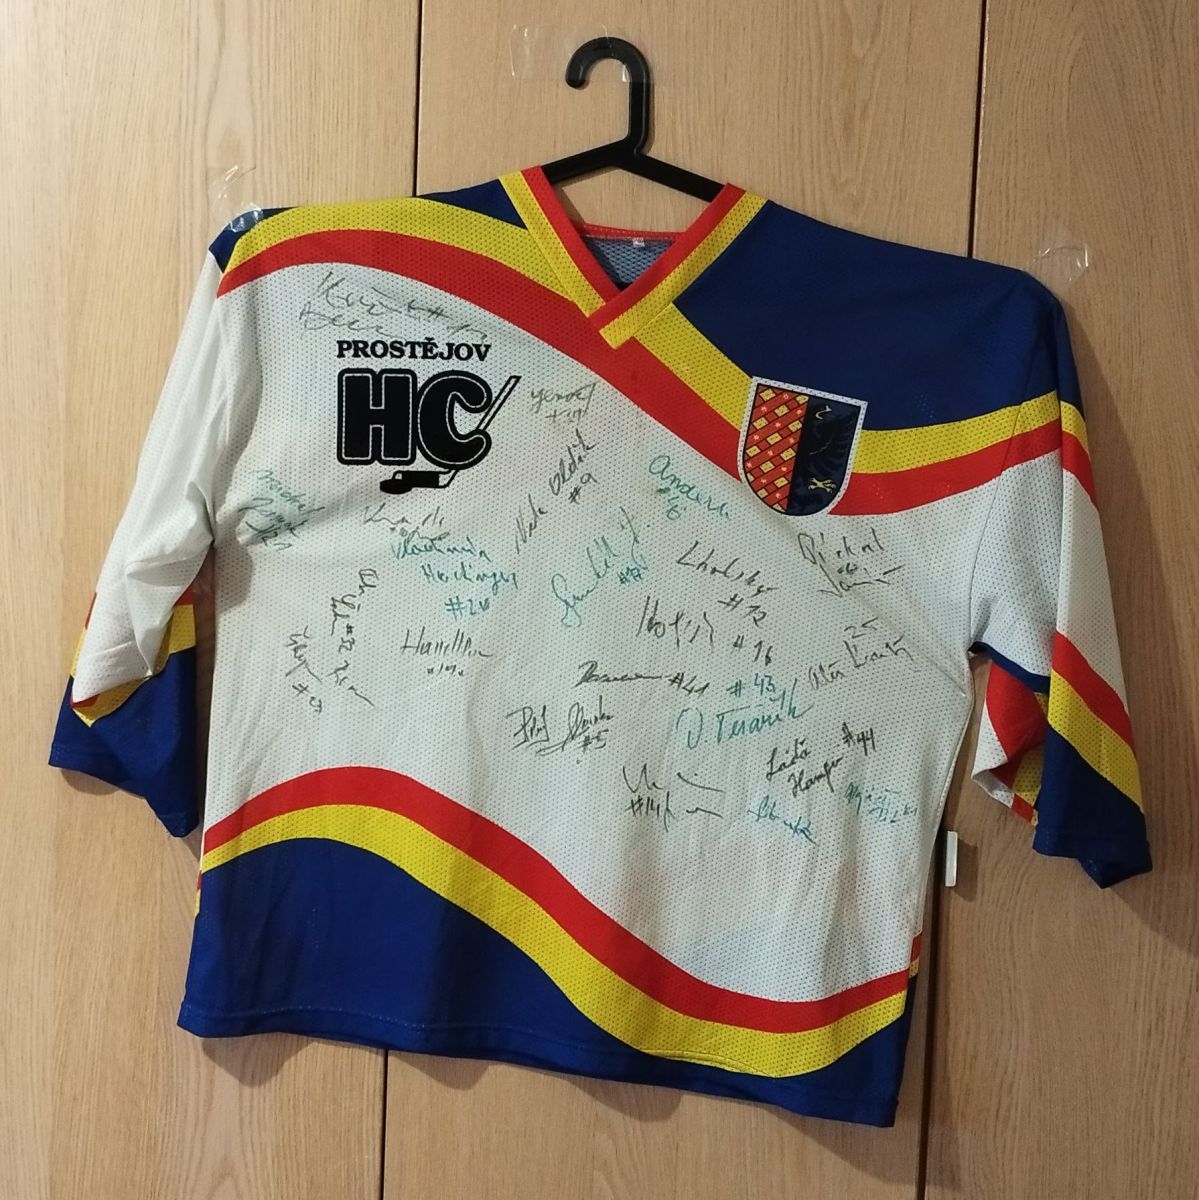 Podepsaný dres HC Prostějov 1997/98 celým týmem fotka